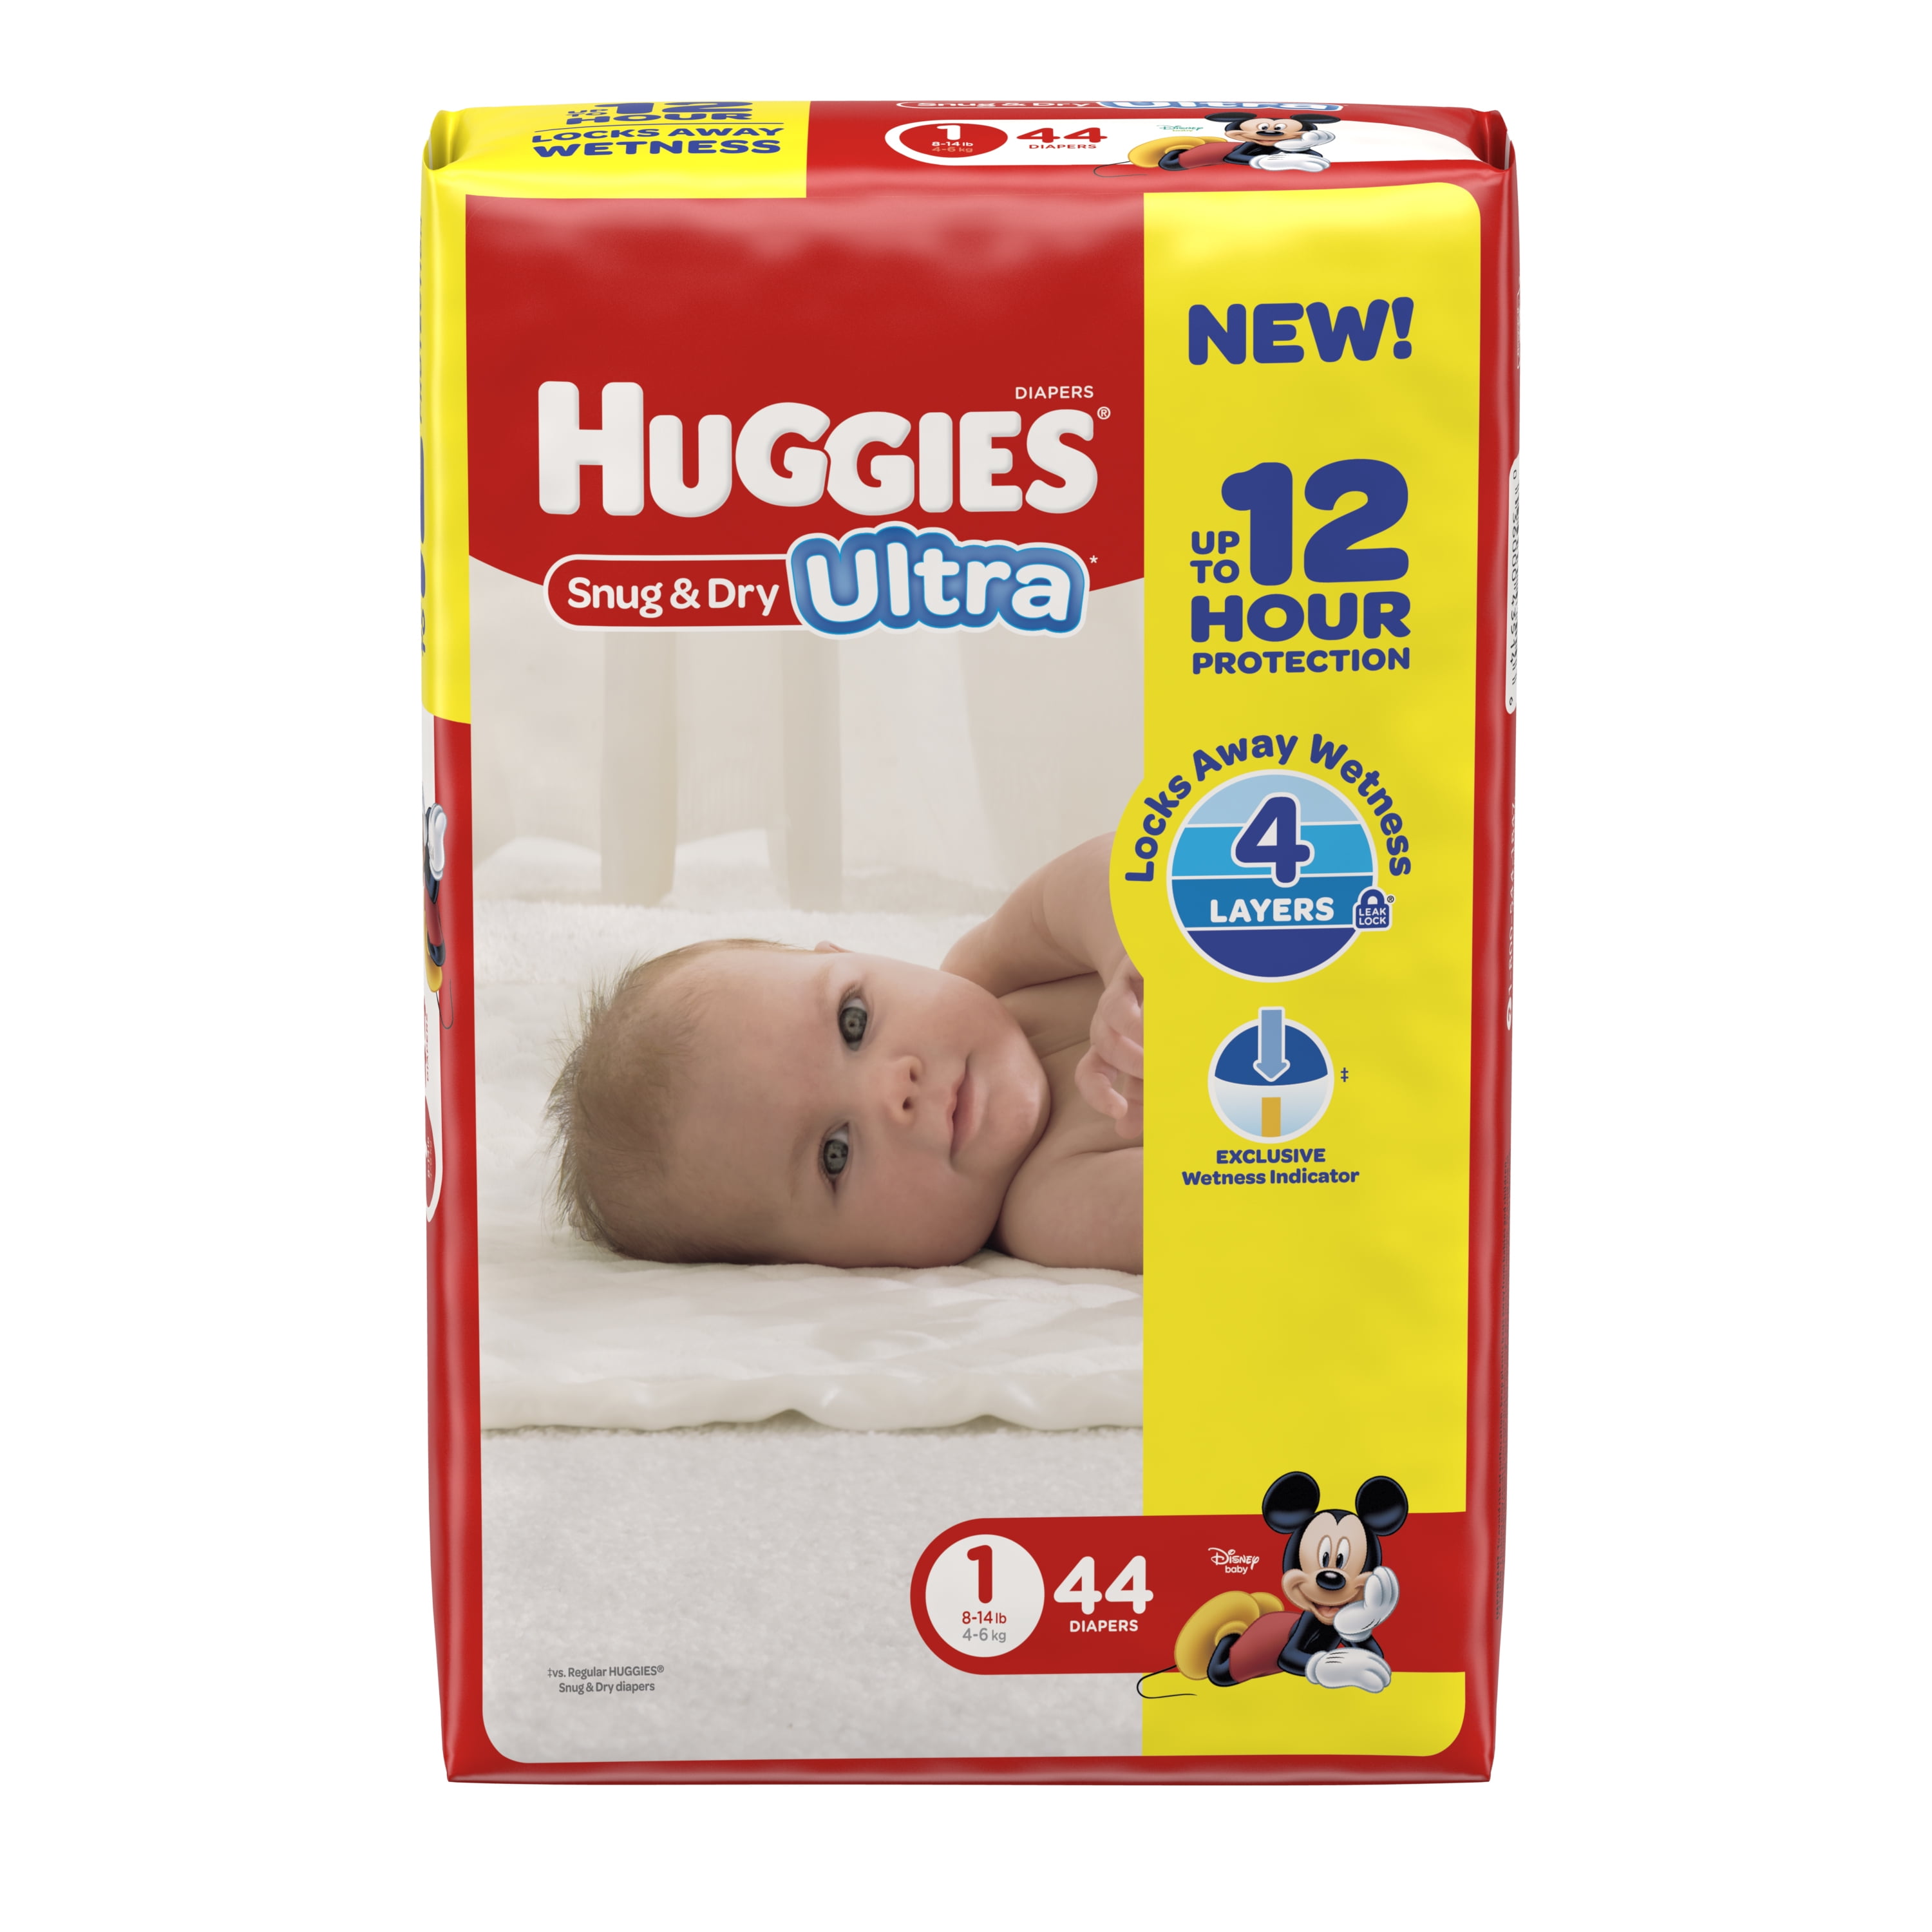 huggies ultra diapers